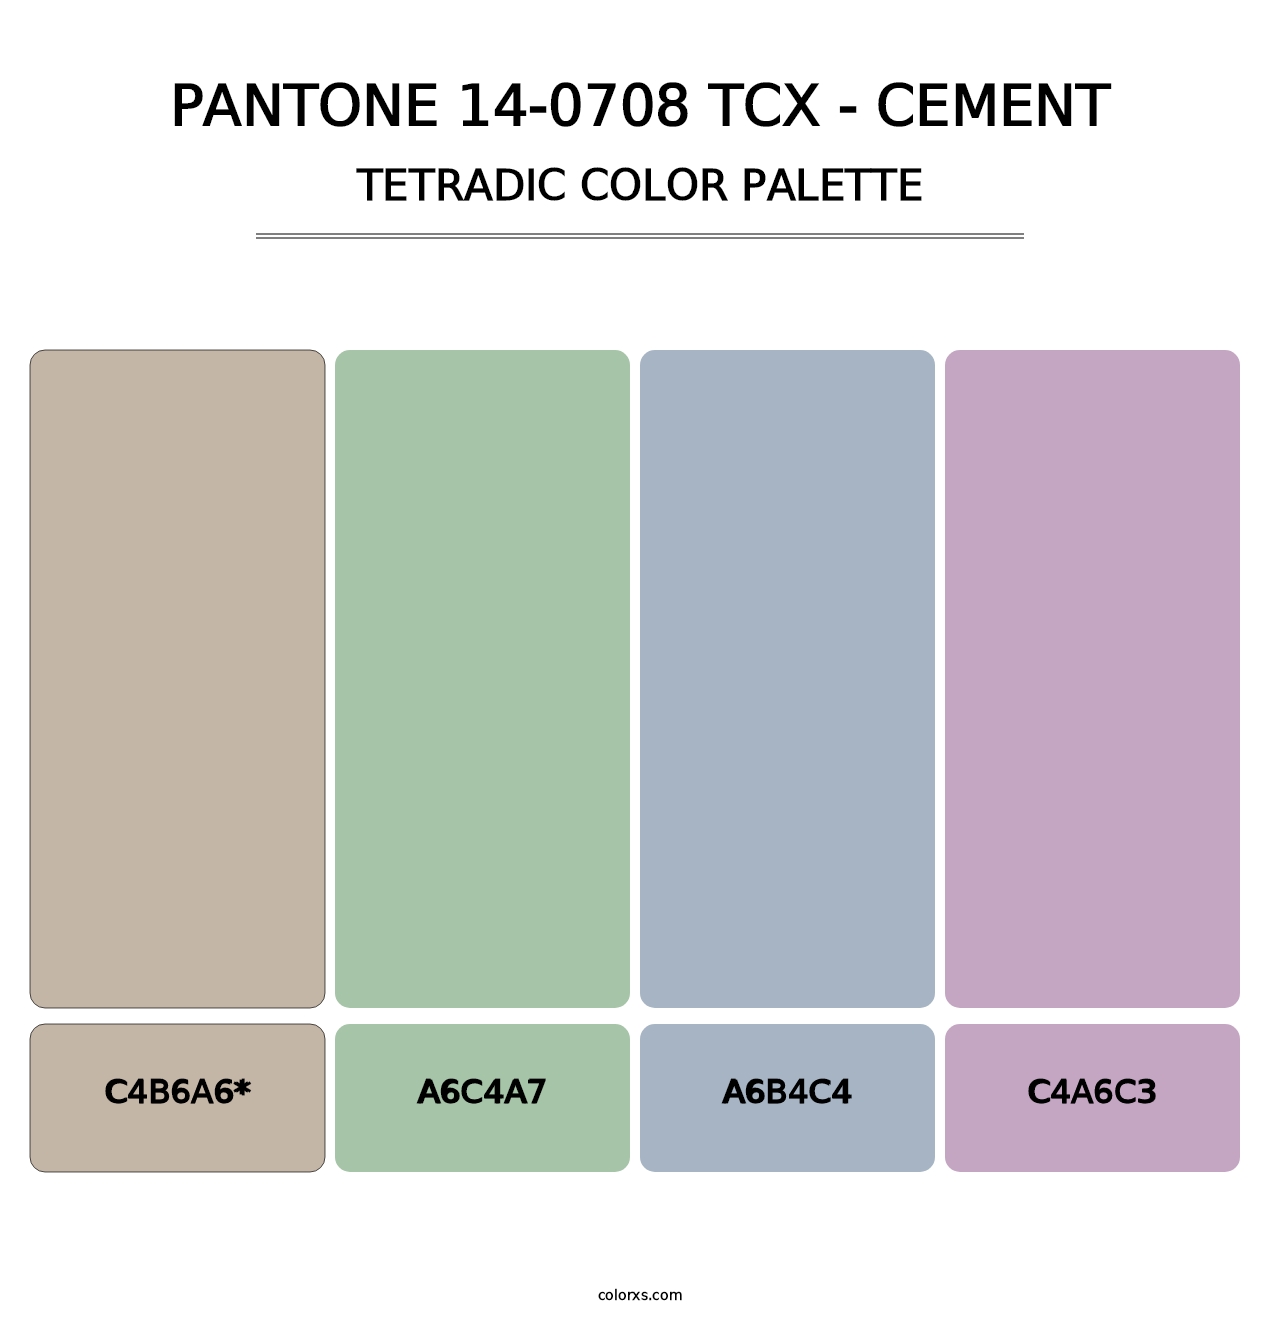 PANTONE 14-0708 TCX - Cement - Tetradic Color Palette